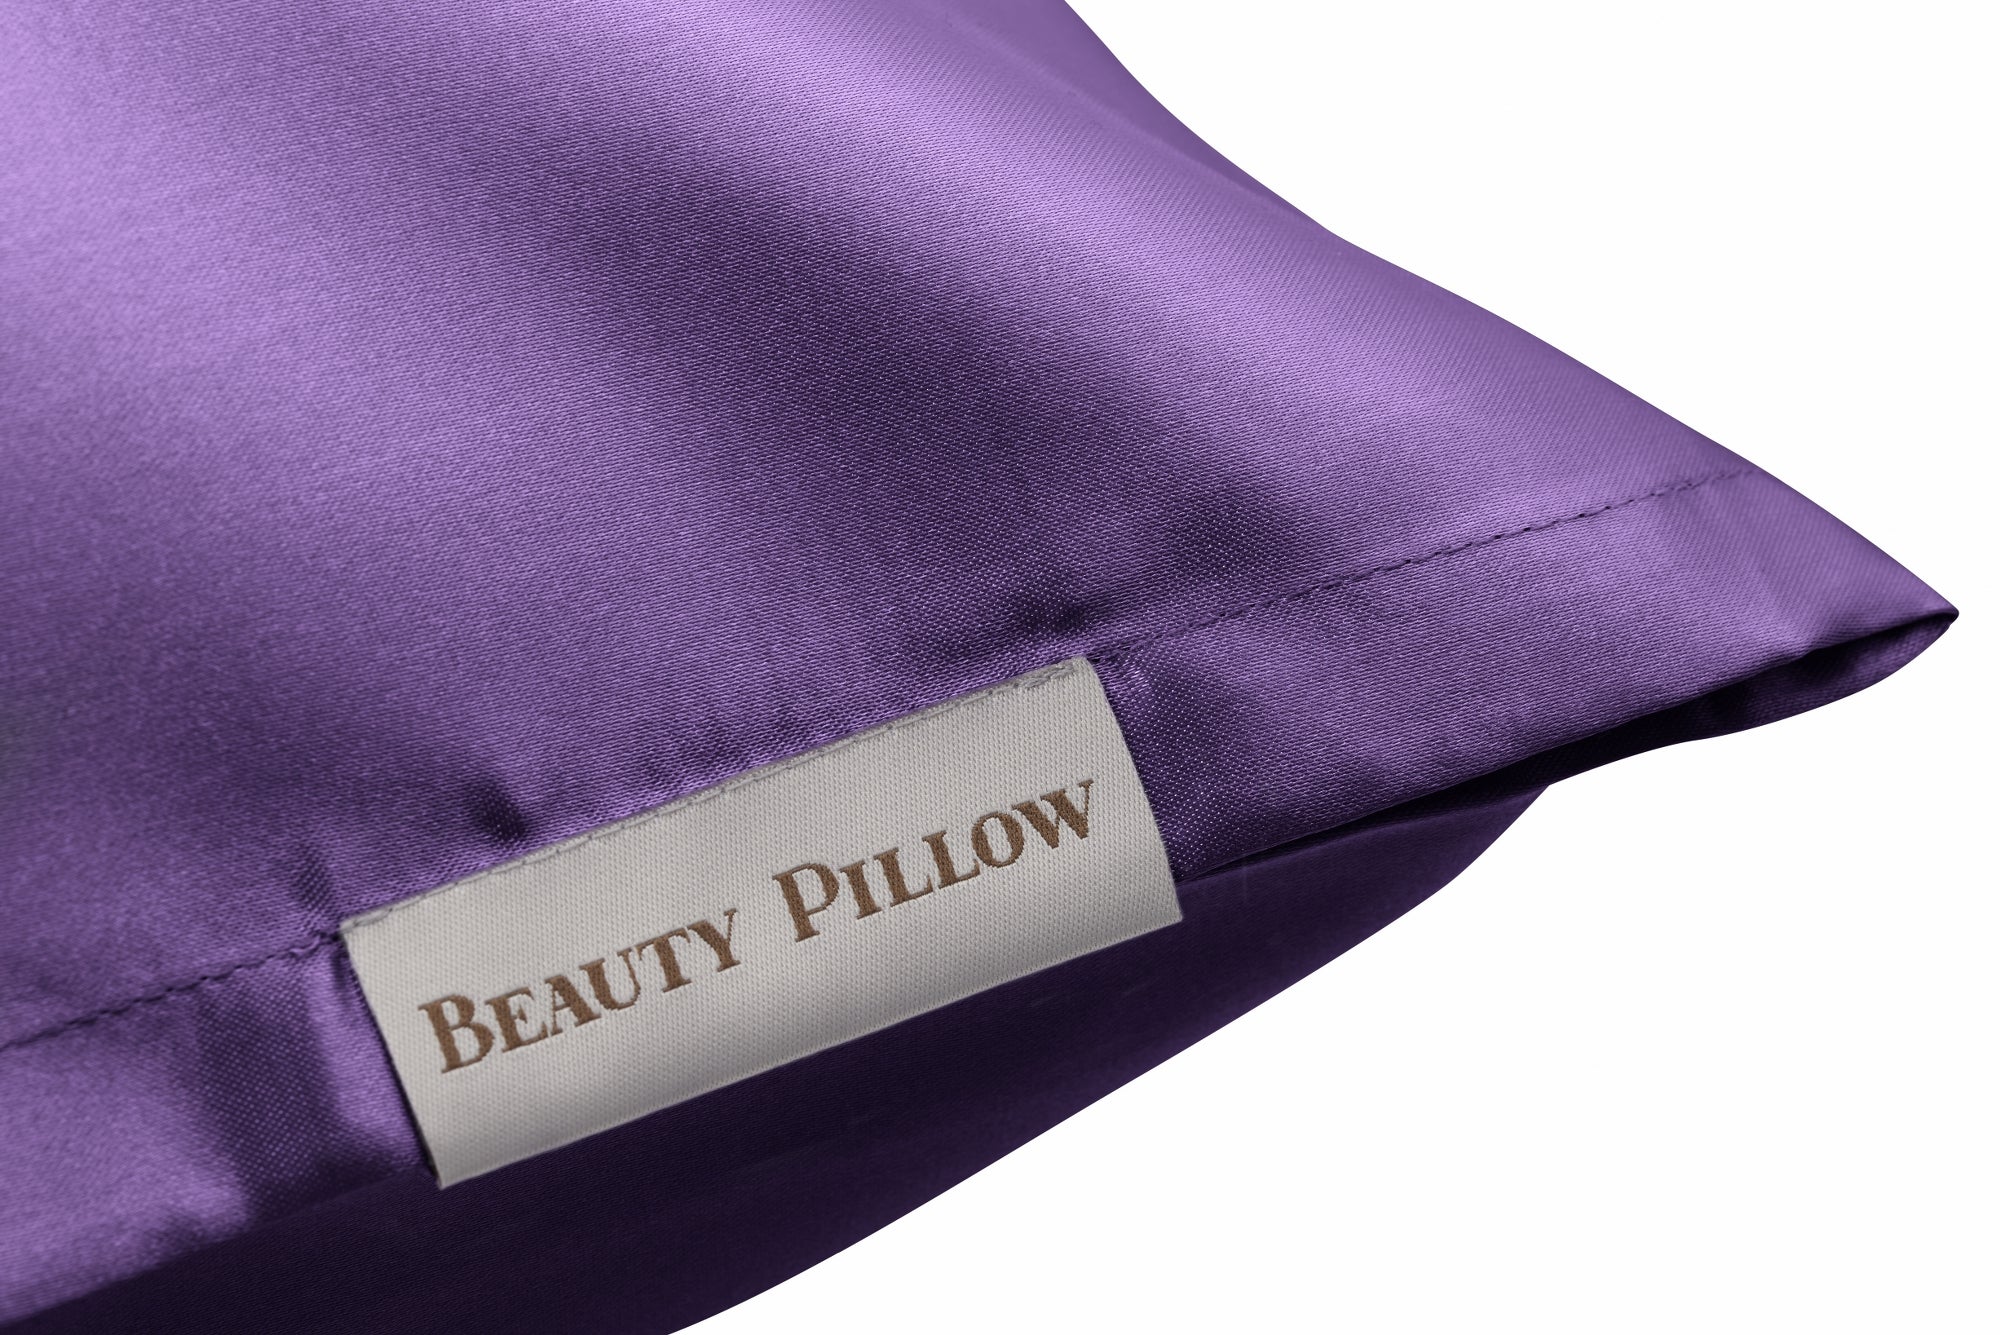 Beauty Pillow® Aubergine - 60x70